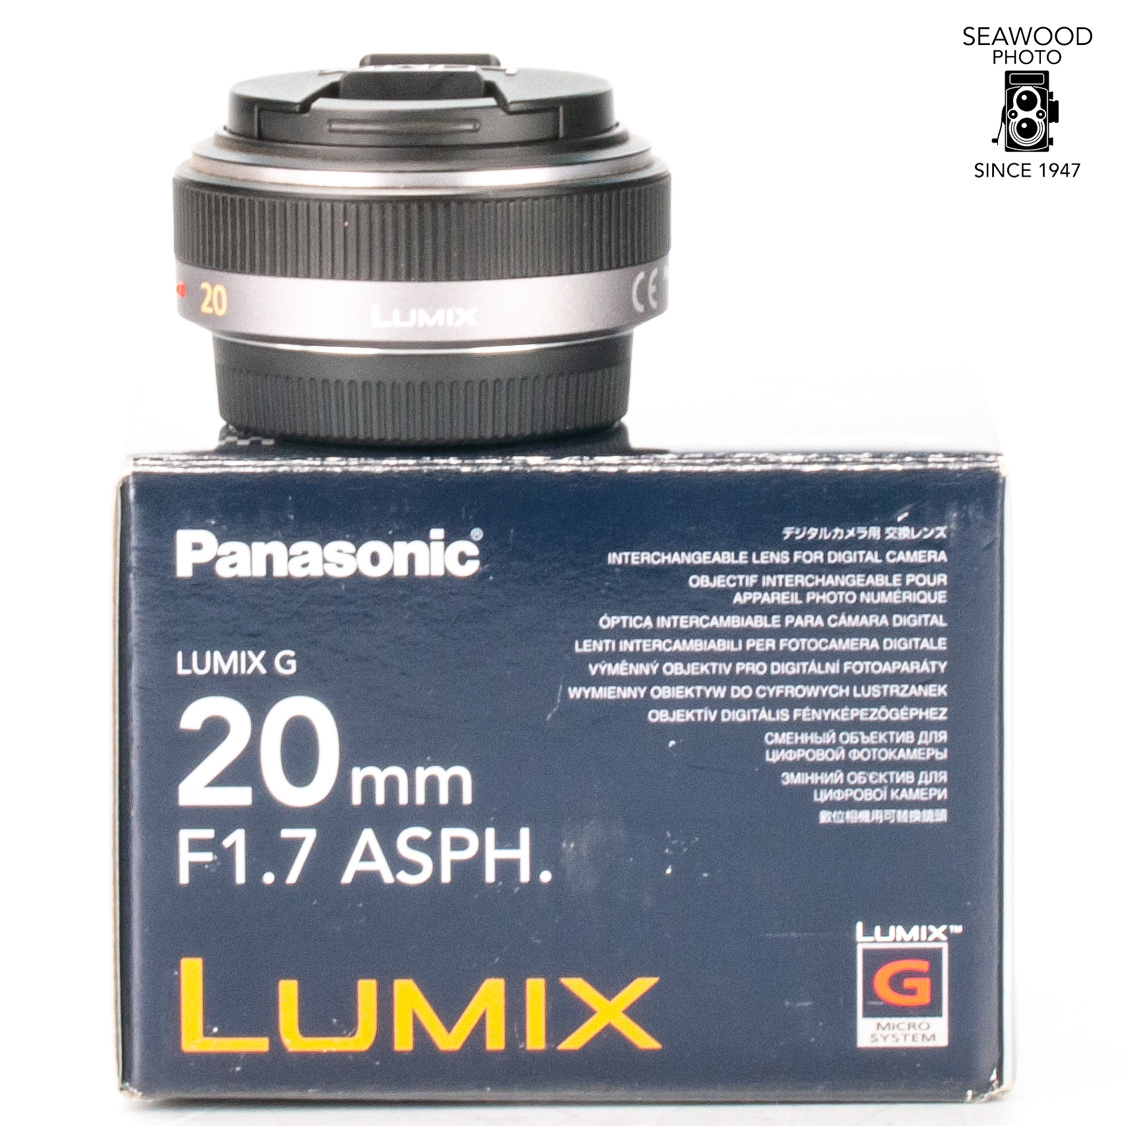 マイクロフォーサーズLUMIX G 20mm F1.7 Ⅱ ASPH. レンズ panasonic